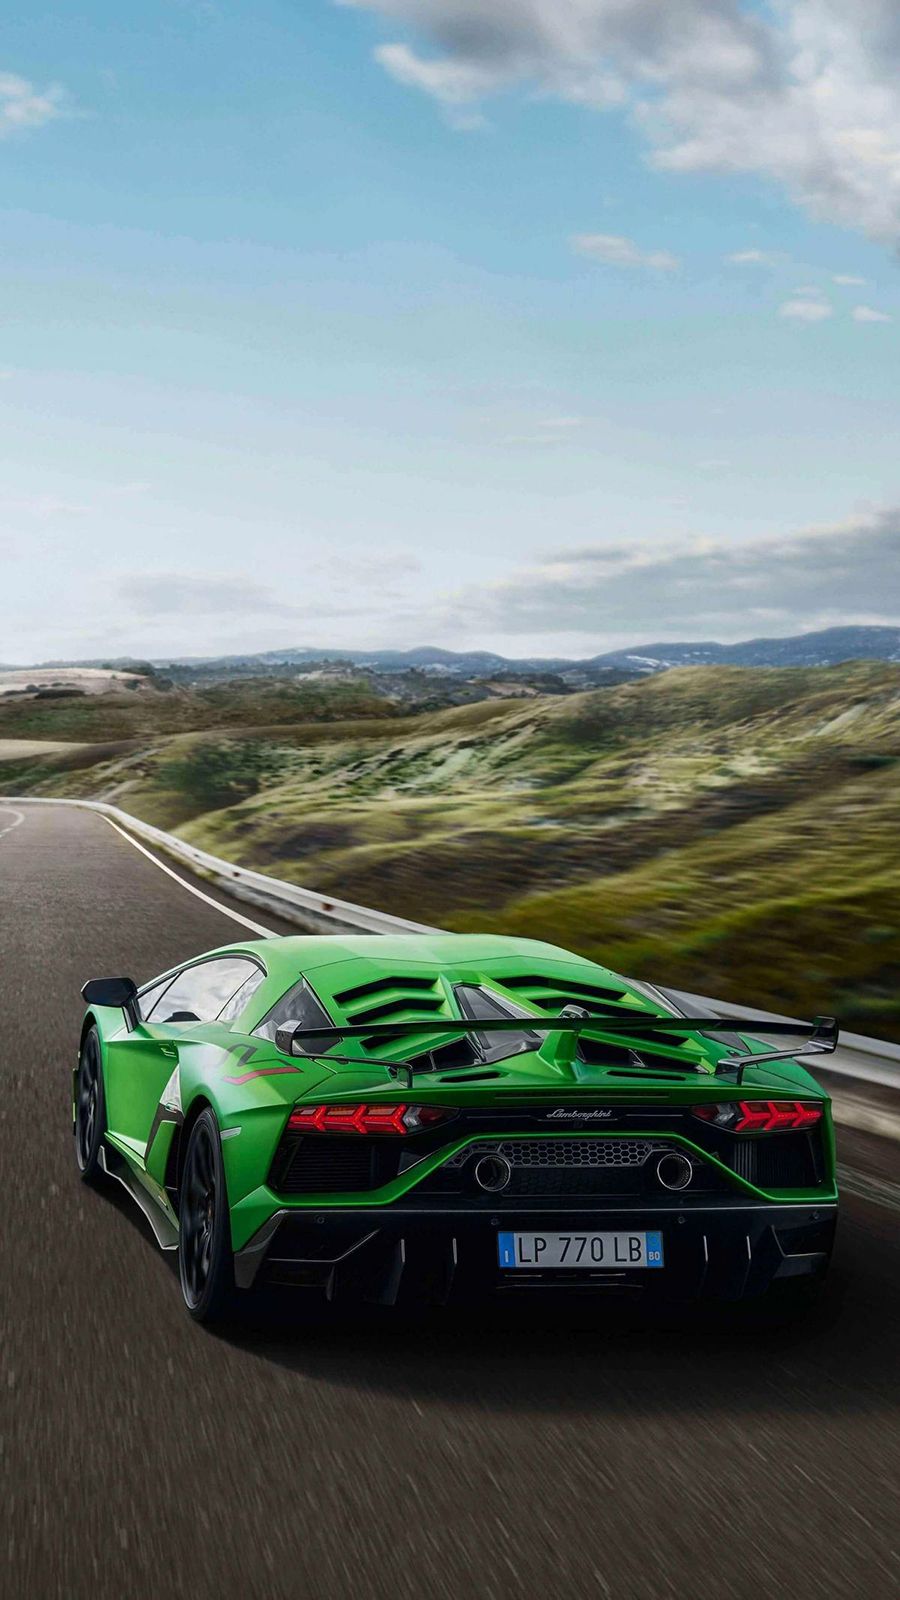 Lamborghini Wallpaper Free Download For iPhone and Phone